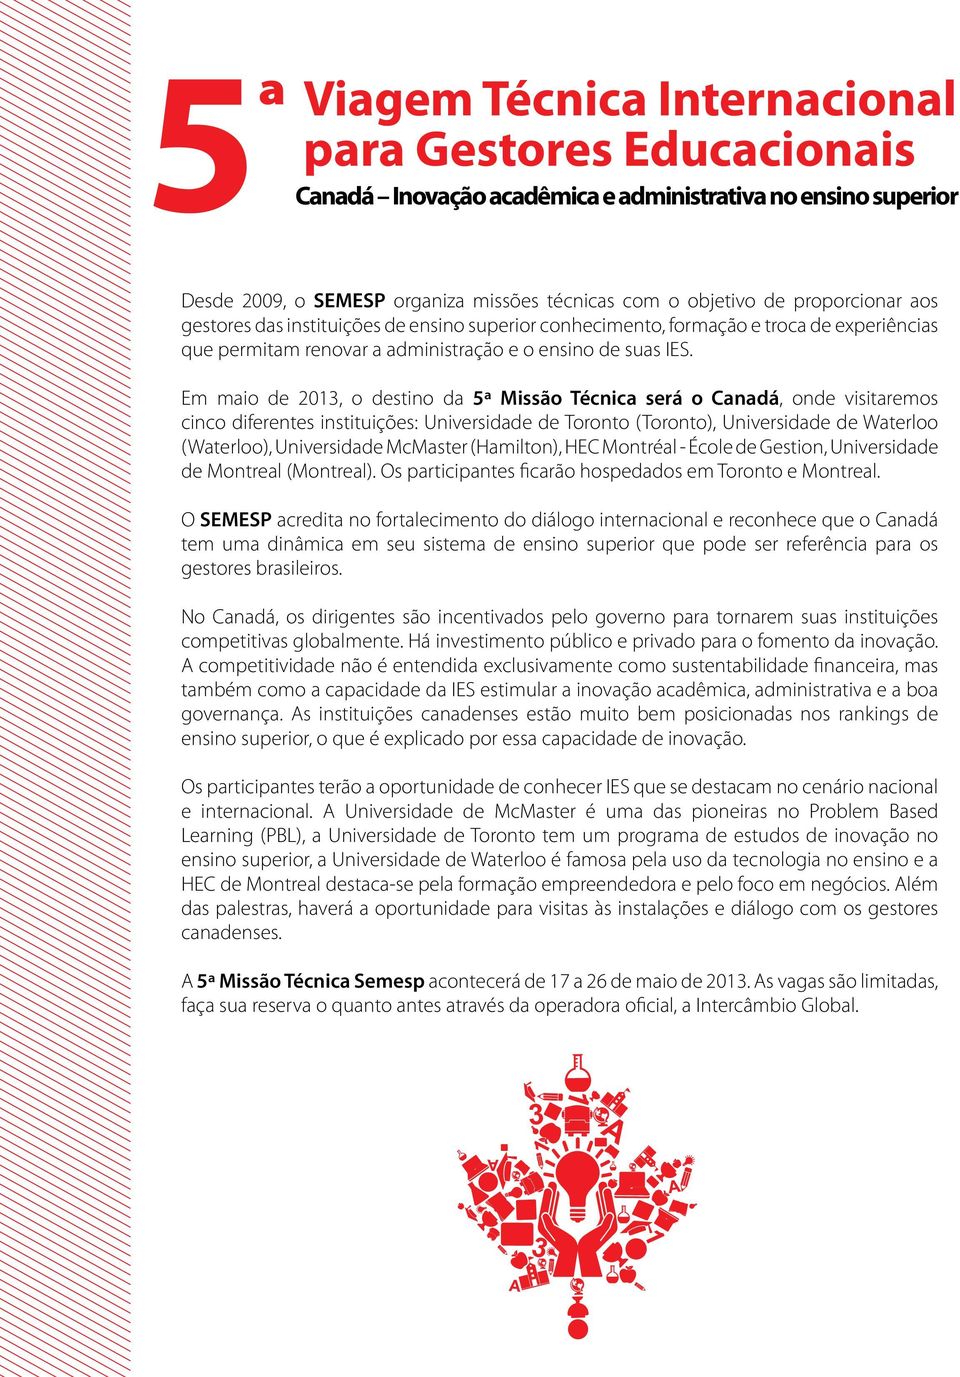 Em maio de 2013, o destino da 5ª Missão Técnica será o Canadá, onde visitaremos cinco diferentes instituições: Universidade de Toronto (Toronto), Universidade de Waterloo (Waterloo), Universidade